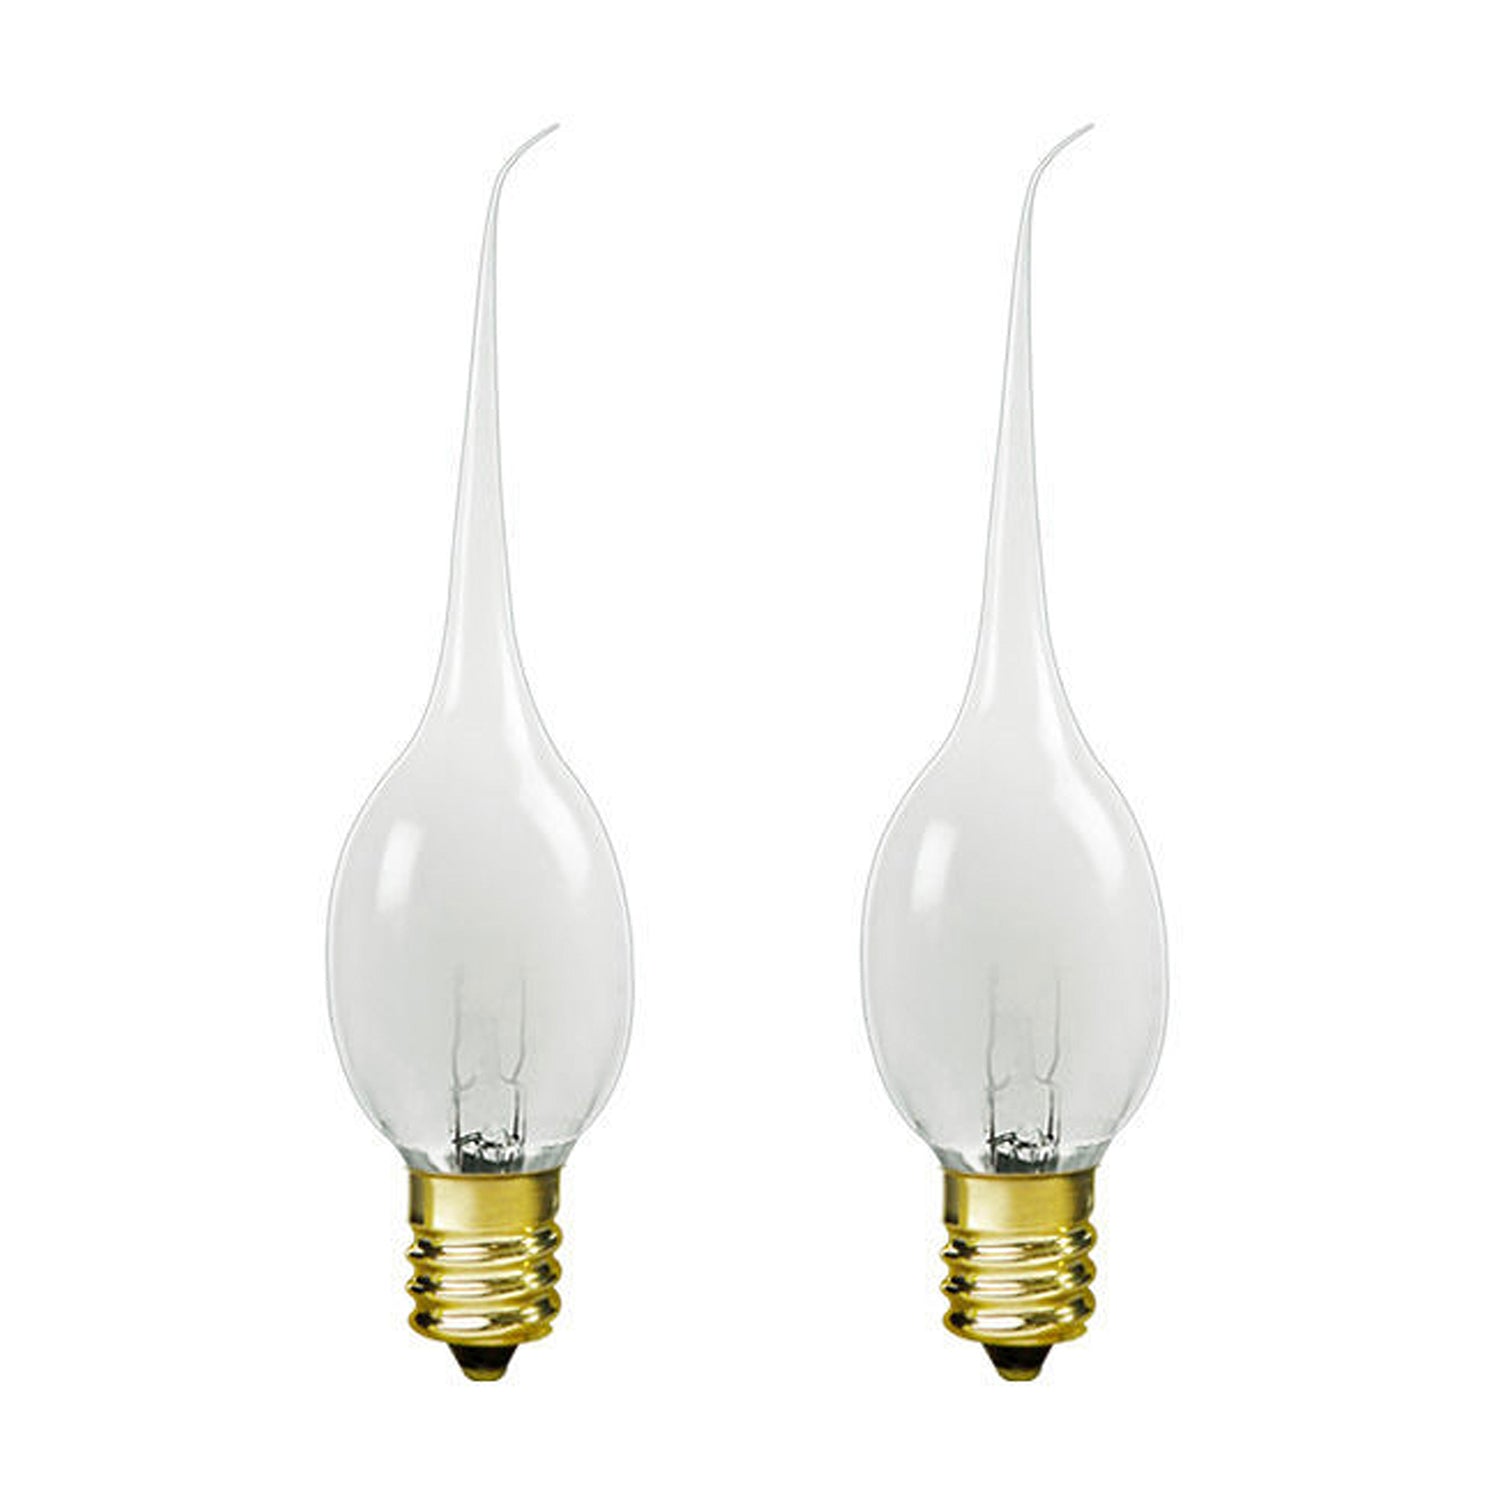 6 Watt Silicone Bulbs E12/Candelabra Base